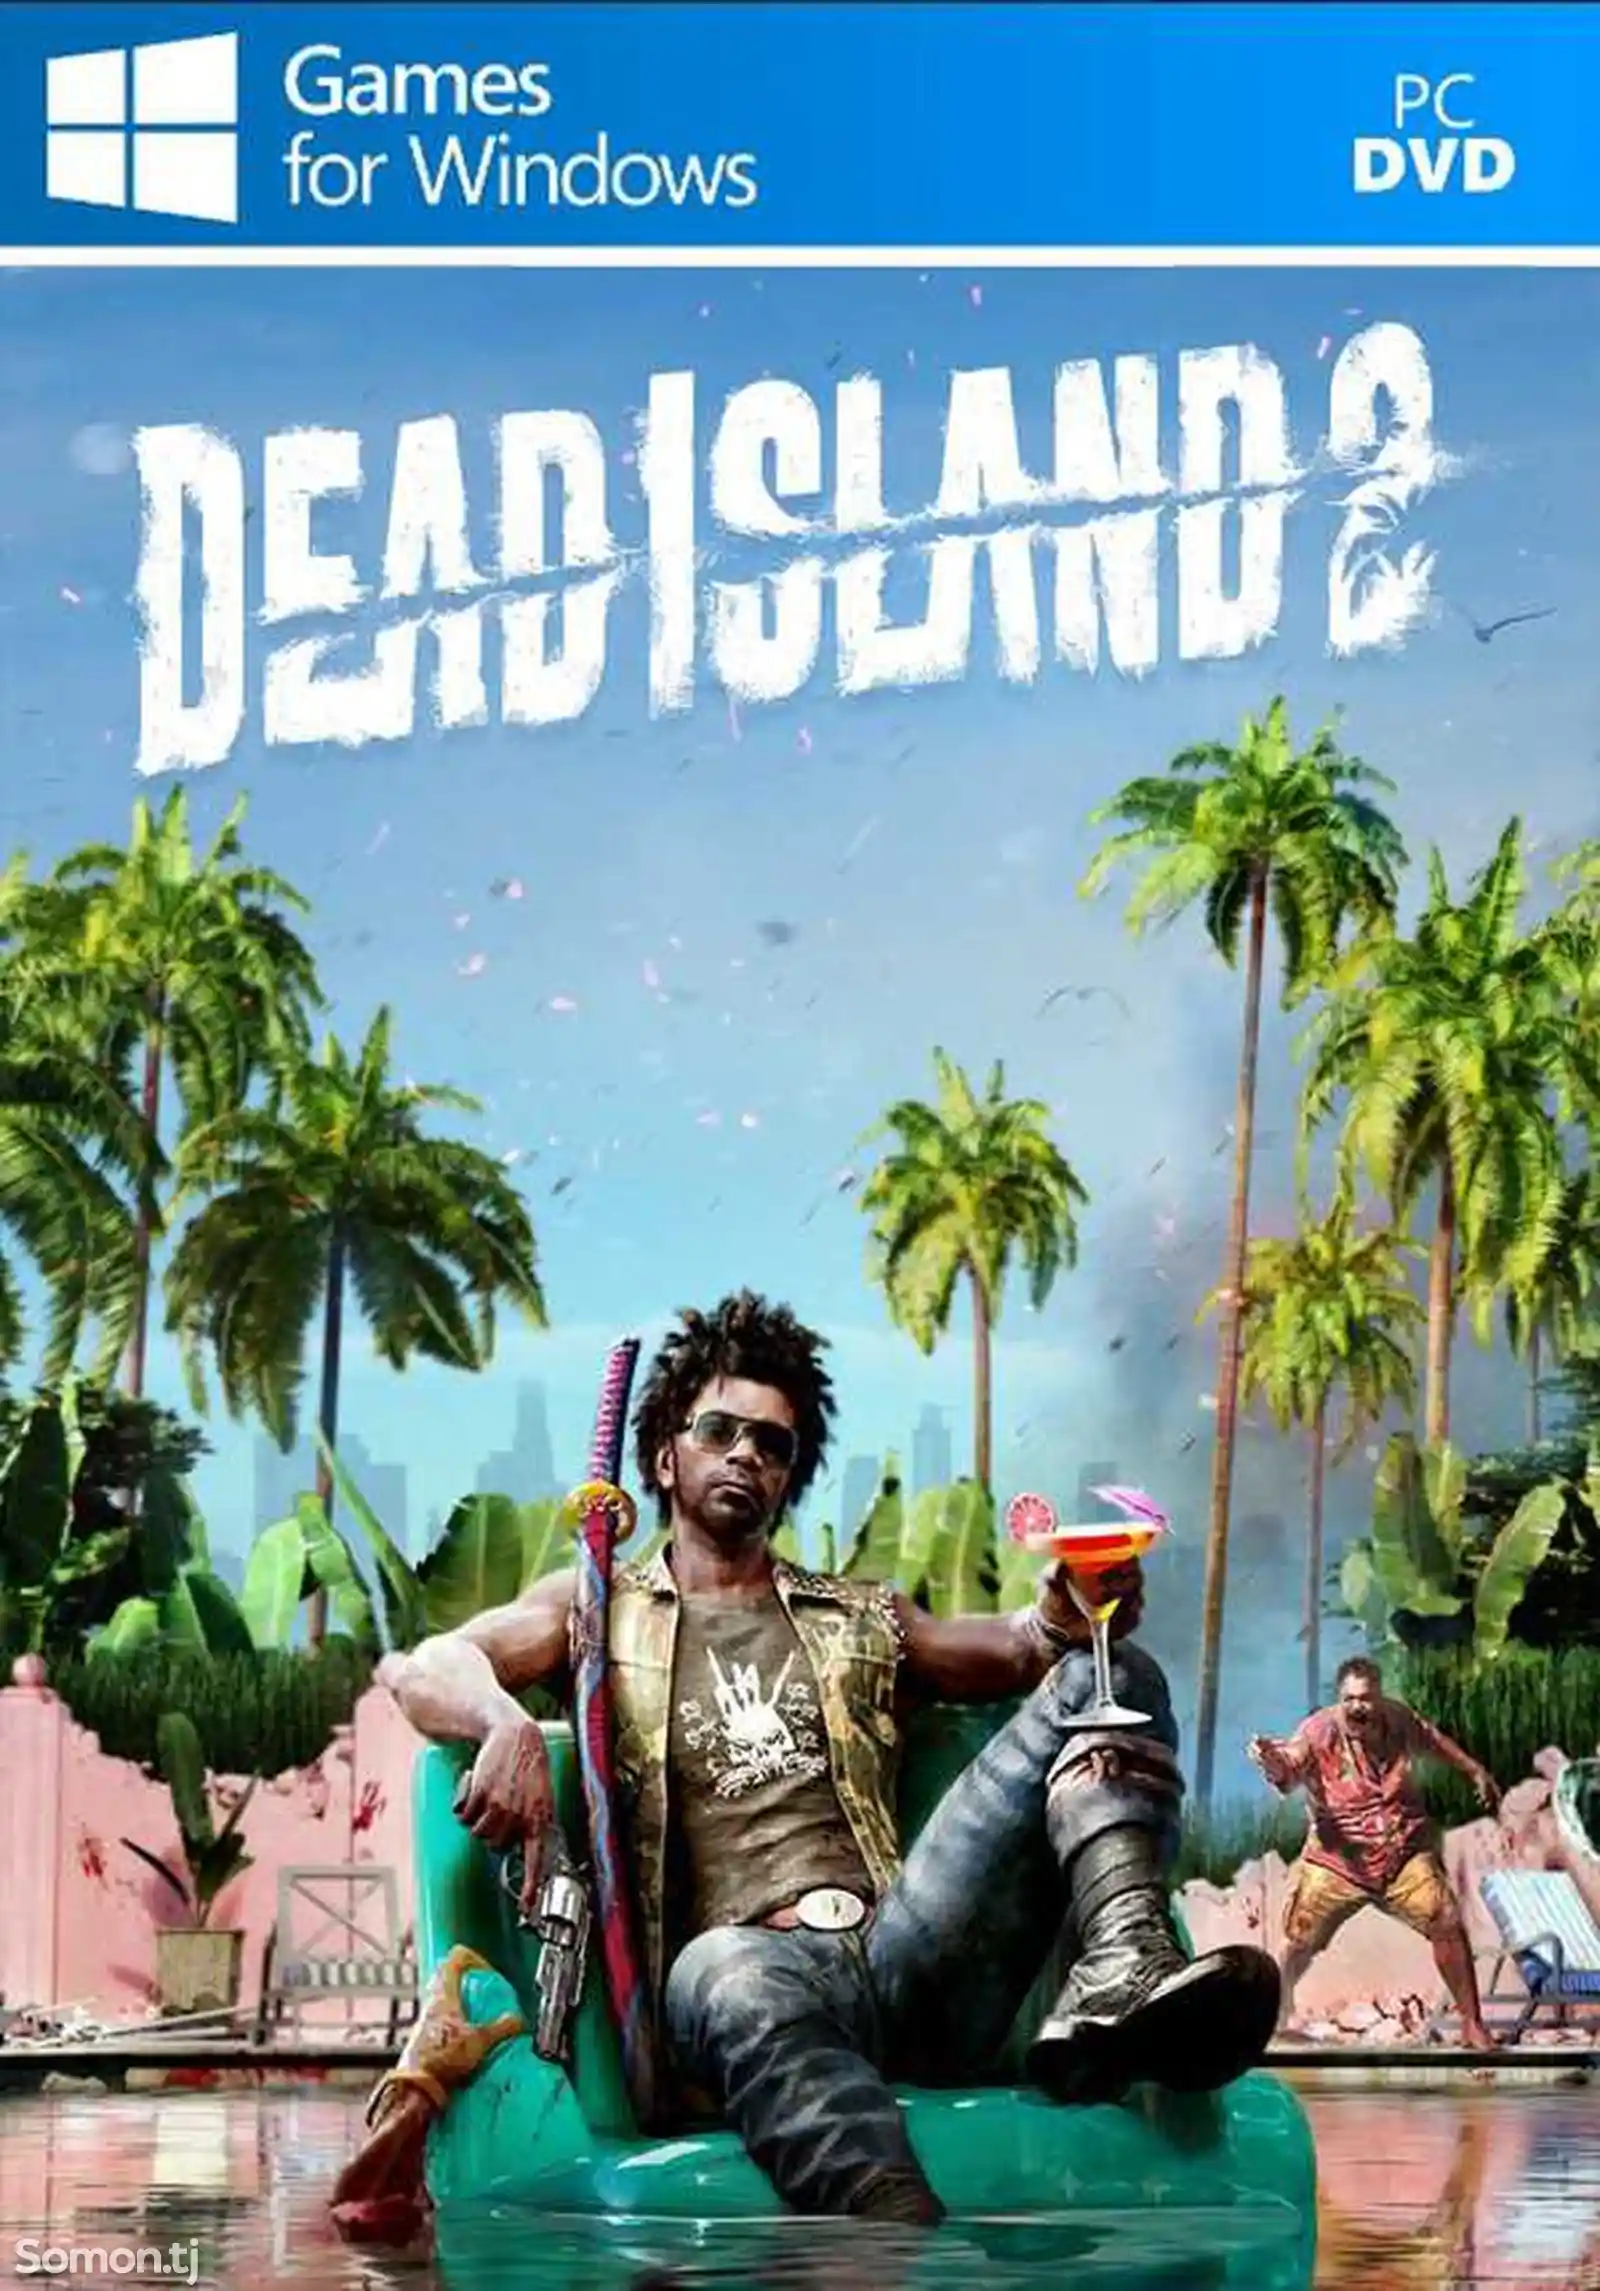 Игра Dead Island 2 компьютера-пк-pc-1